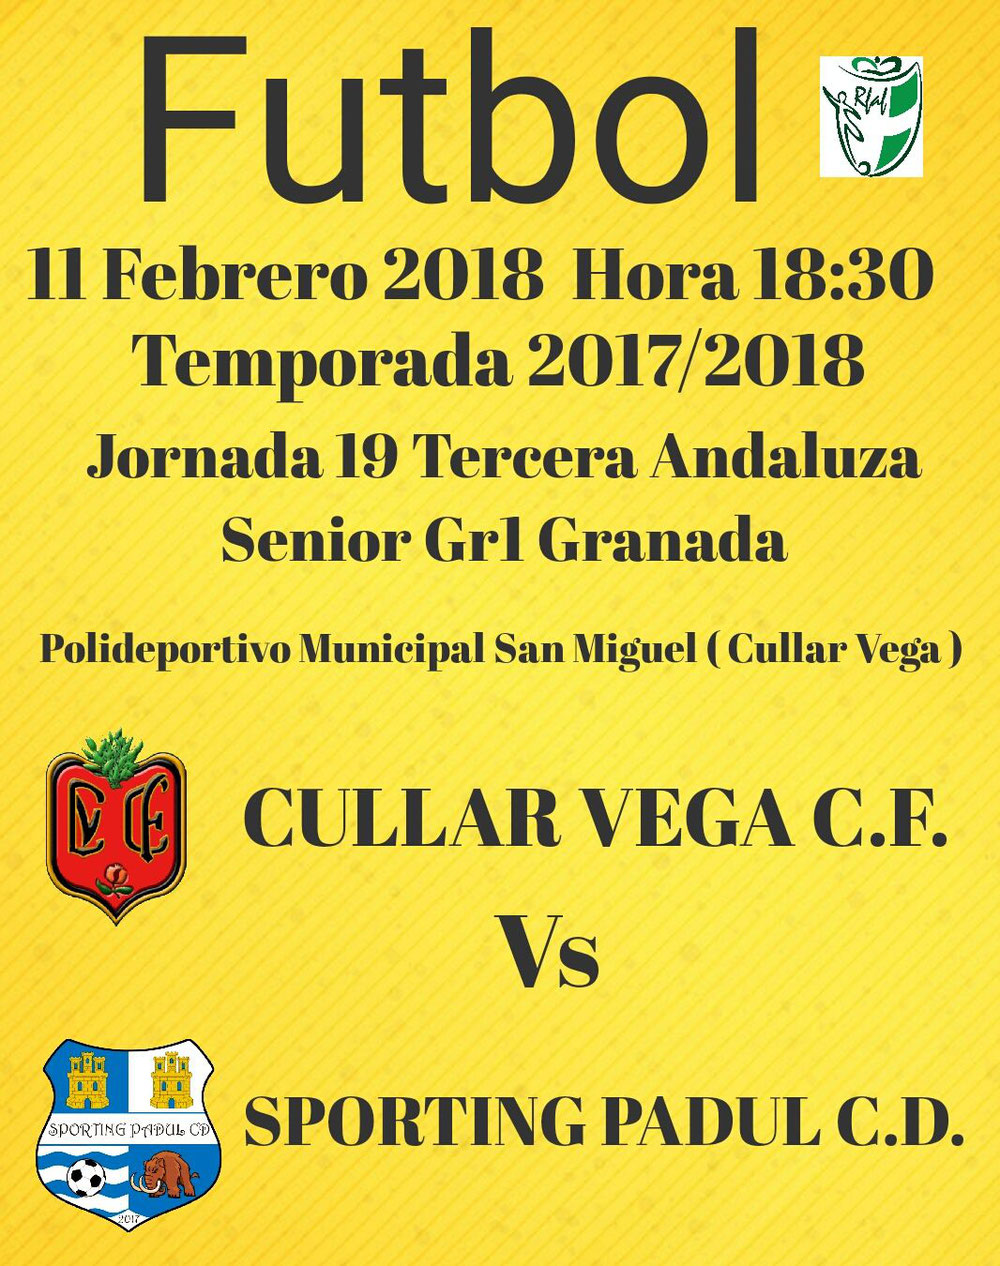 Cullar Vega CF ( b ) vs Sporting Padul CD 